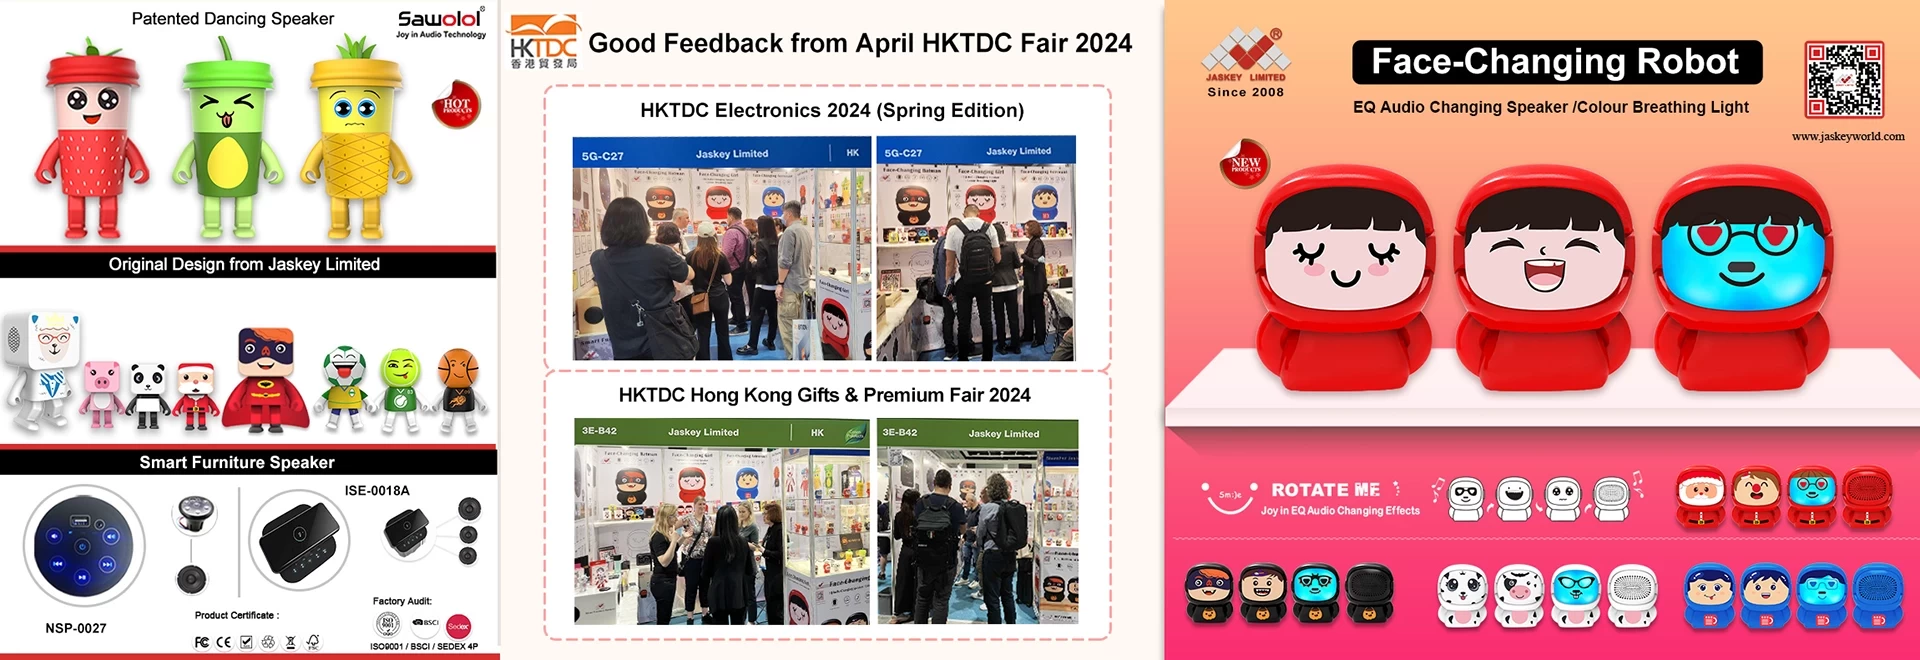 ผลตอบรับที่ดีจากงาน HKTDC Electronics 2024 (Spring Edition) และงาน Gifts & Premium Fair